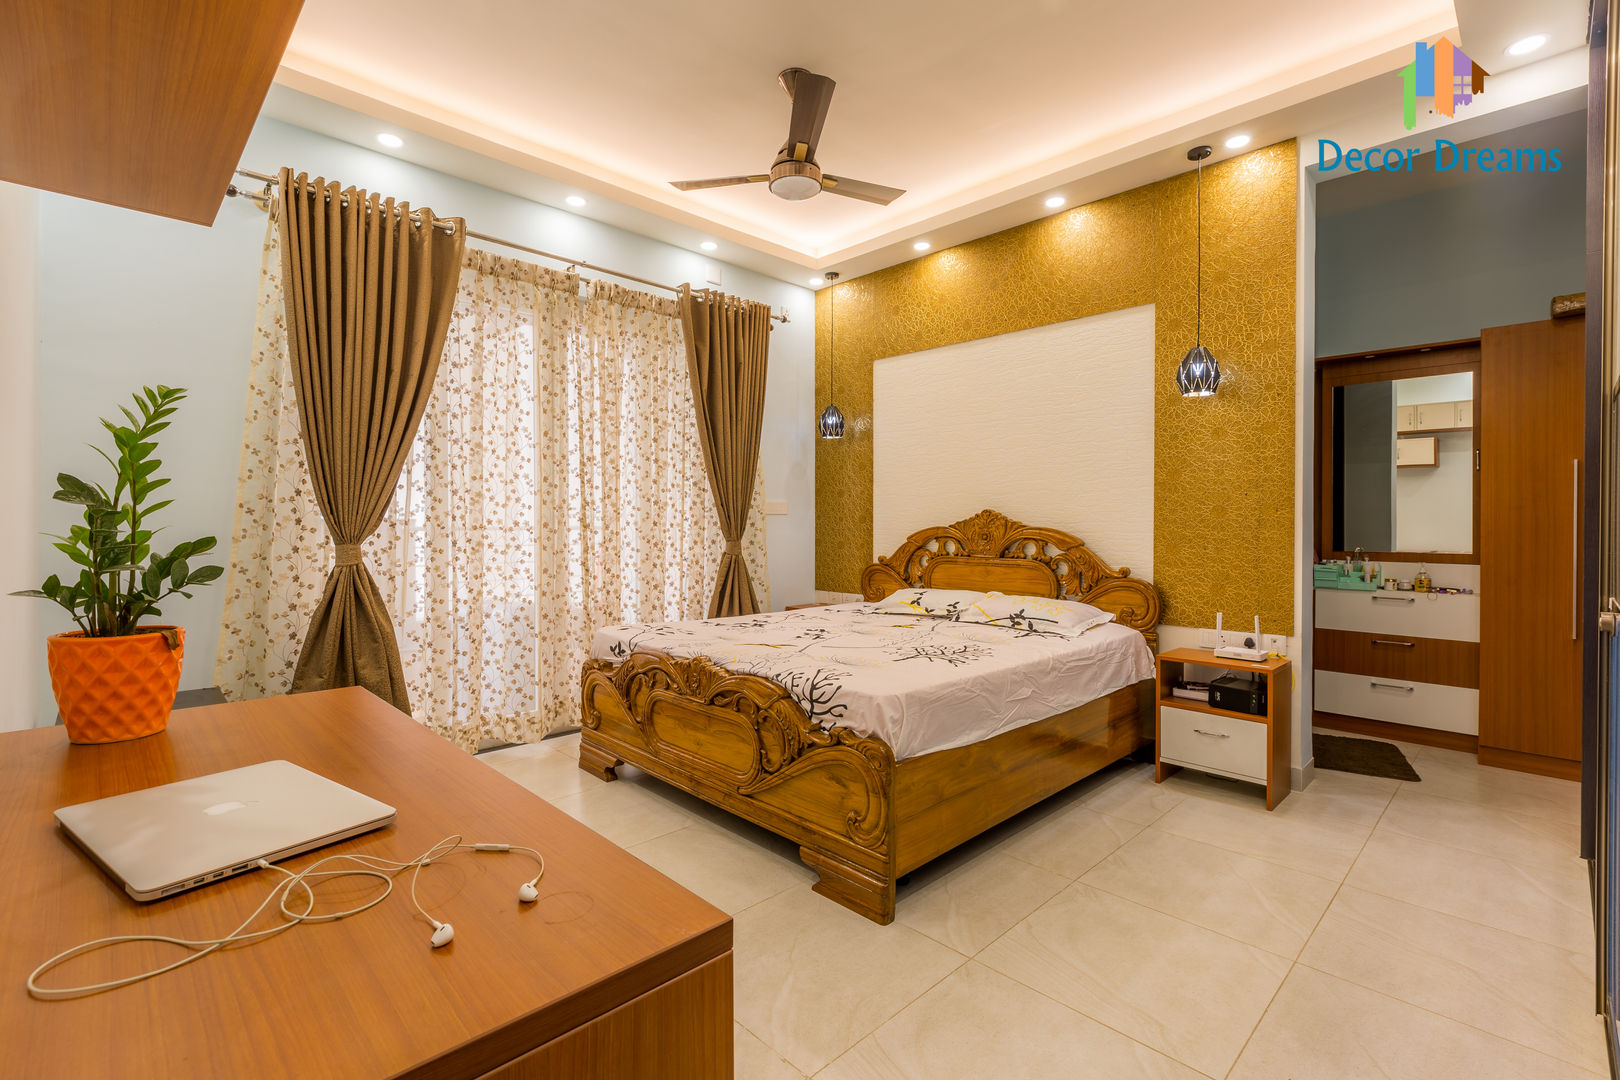 Vaishnavi Terraces, 3 BHK - Ms. Supriya, DECOR DREAMS DECOR DREAMS Dormitorios de estilo moderno